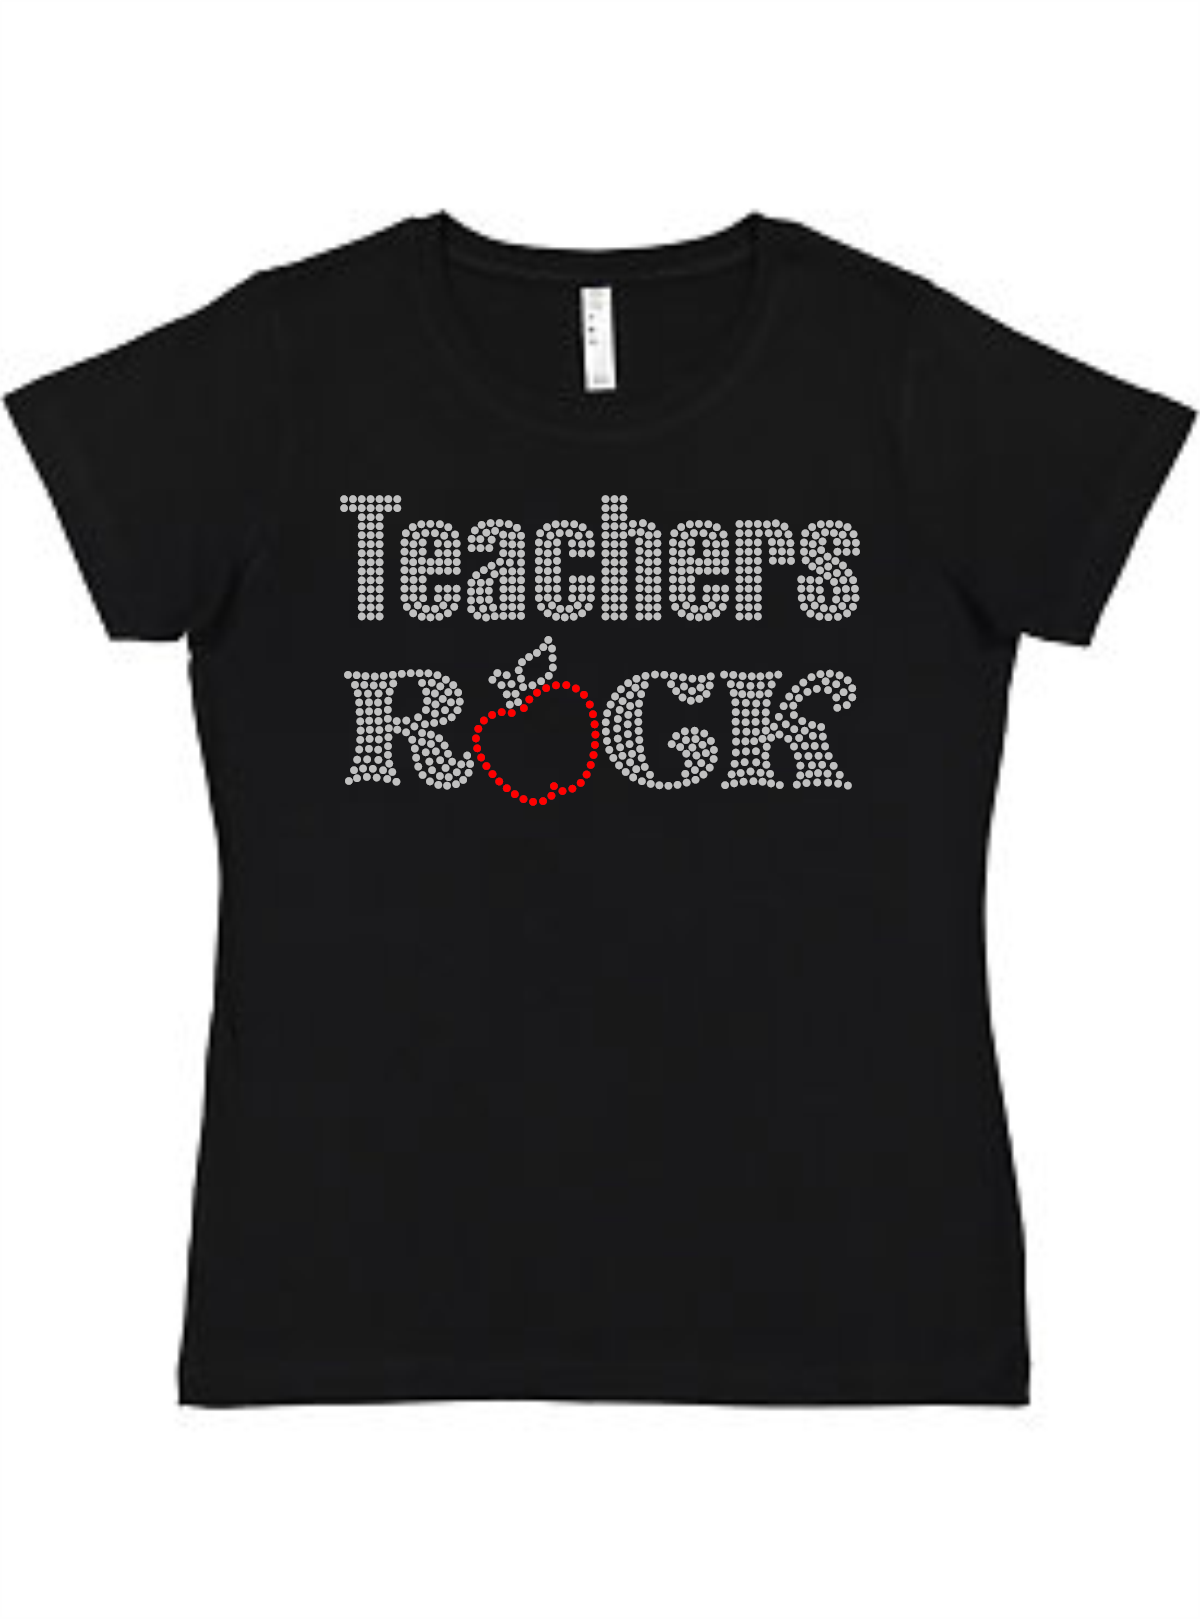 Teachers Rock Ladies Tee Akron Pride Custom Tees